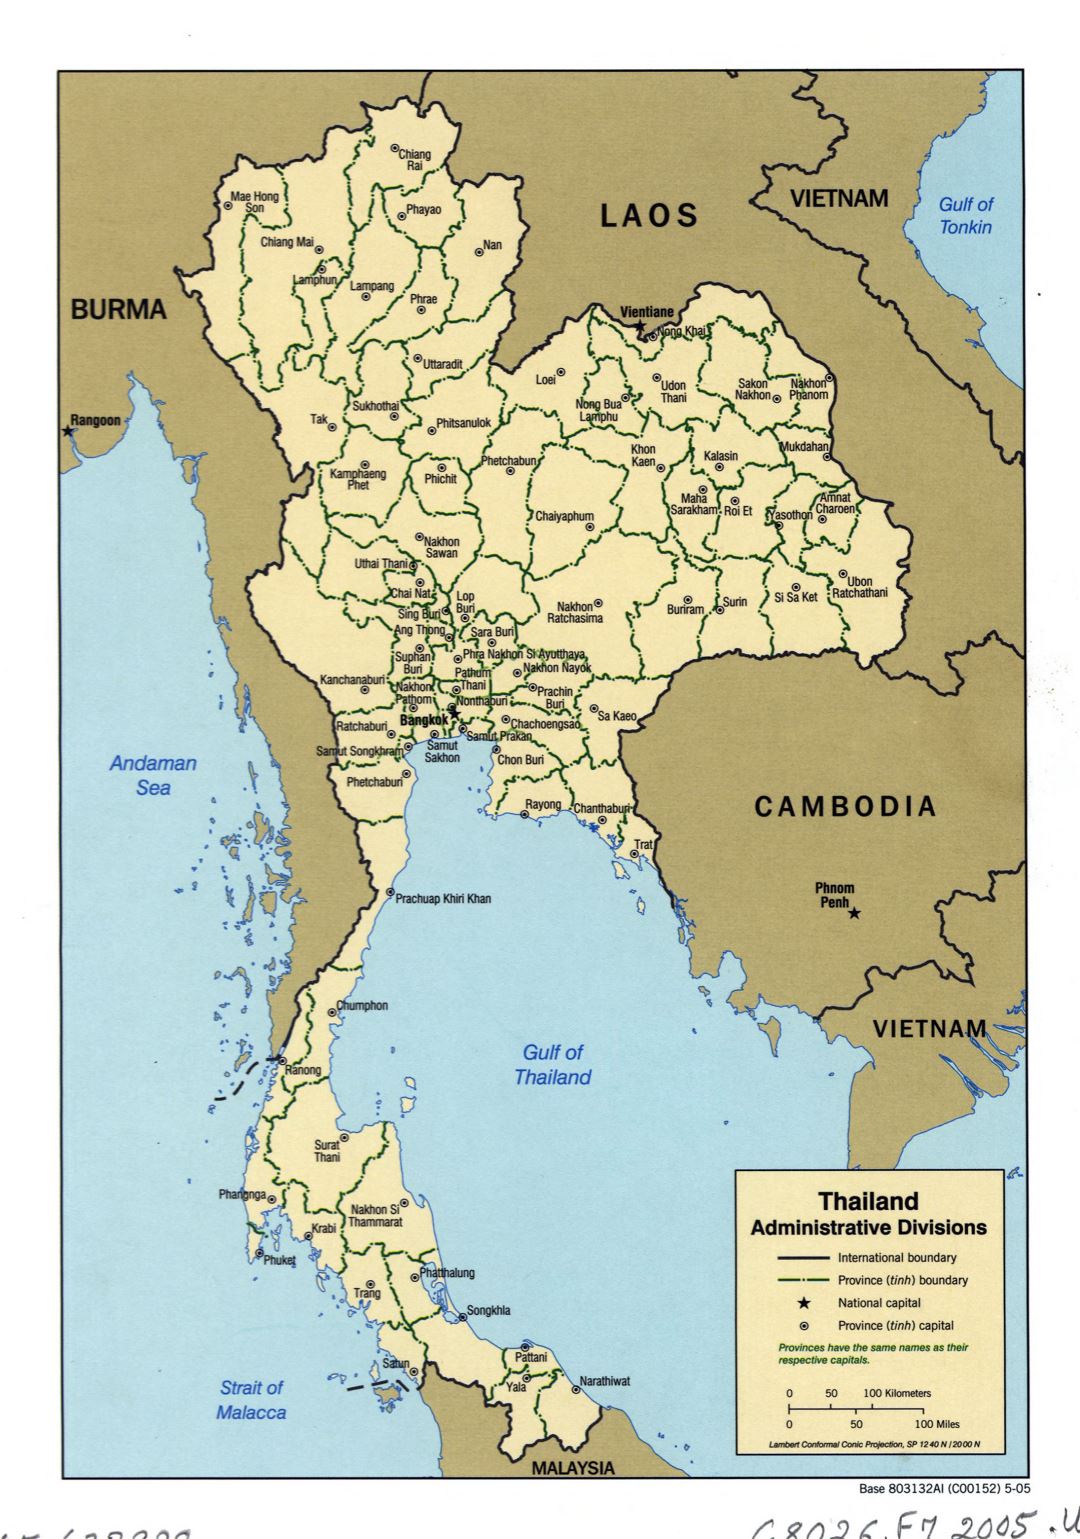 Большая детальная карта административных делений Таиланда - 2005